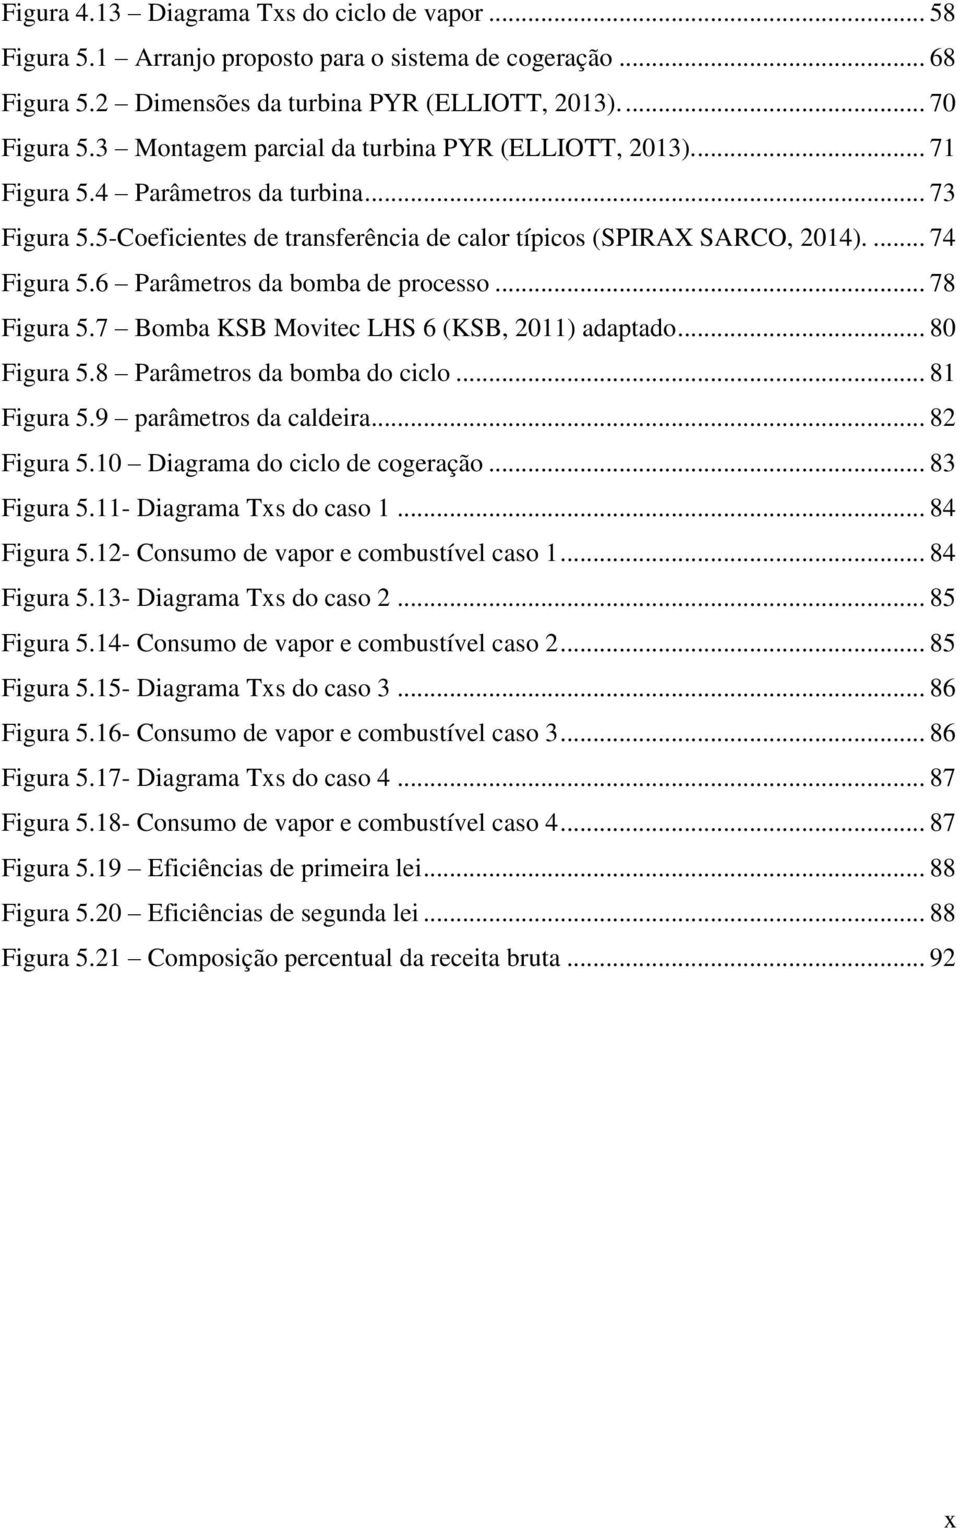 6 Parâmetros da bomba de processo... 78 Figura 5.7 Bomba KSB Movitec LHS 6 (KSB, 2011) adaptado... 80 Figura 5.8 Parâmetros da bomba do ciclo... 81 Figura 5.9 parâmetros da caldeira... 82 Figura 5.